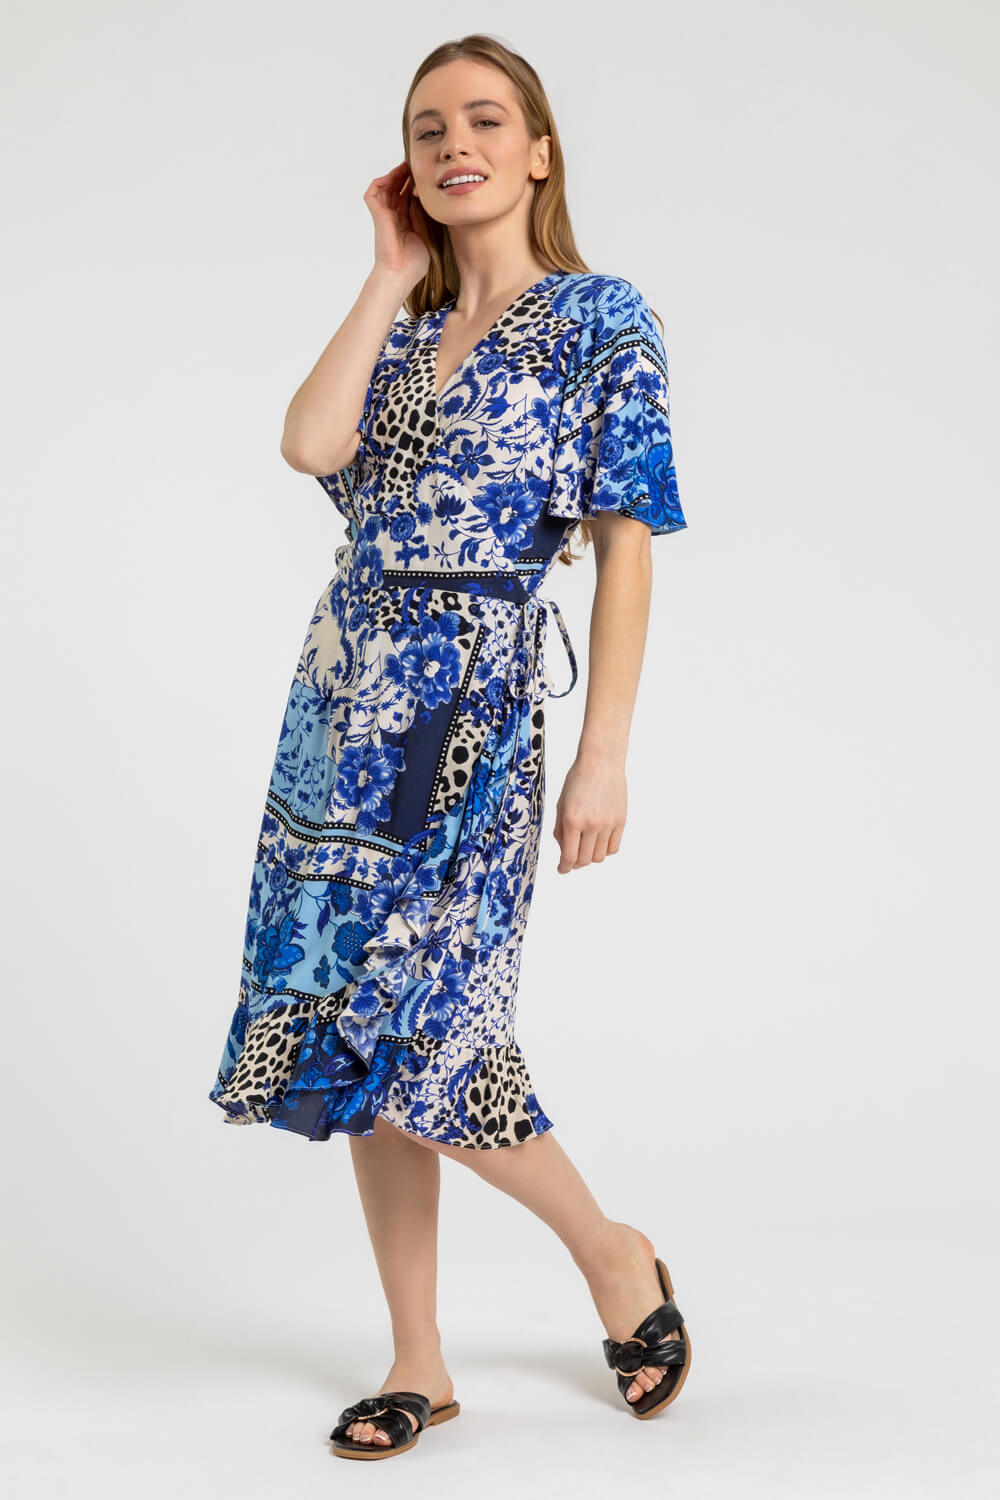 Blue Petite Floral Contrast Print Wrap Dress, Image 4 of 5